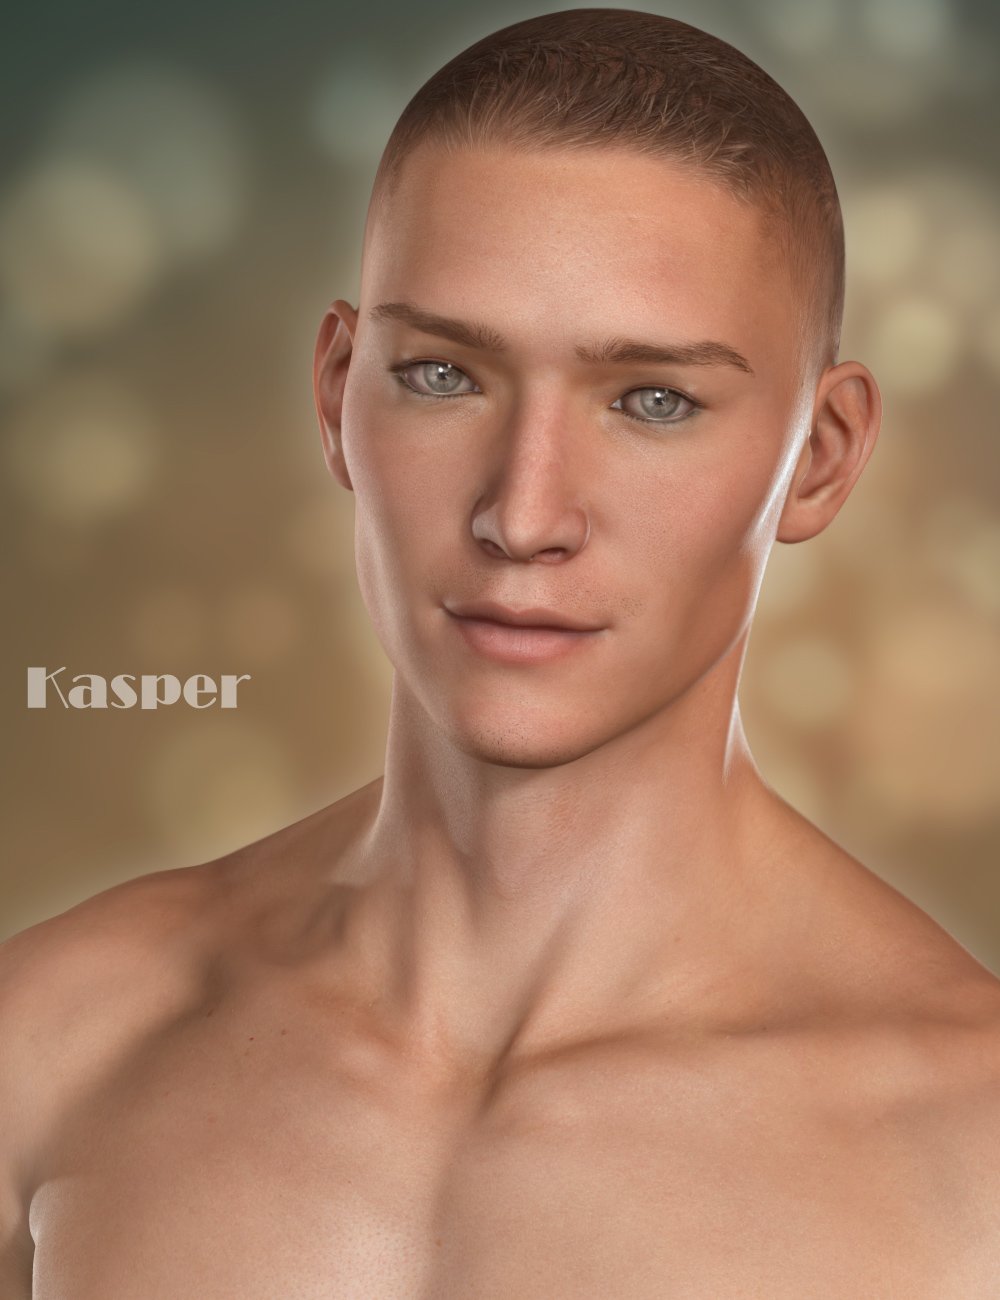 Kasper for Lee 6